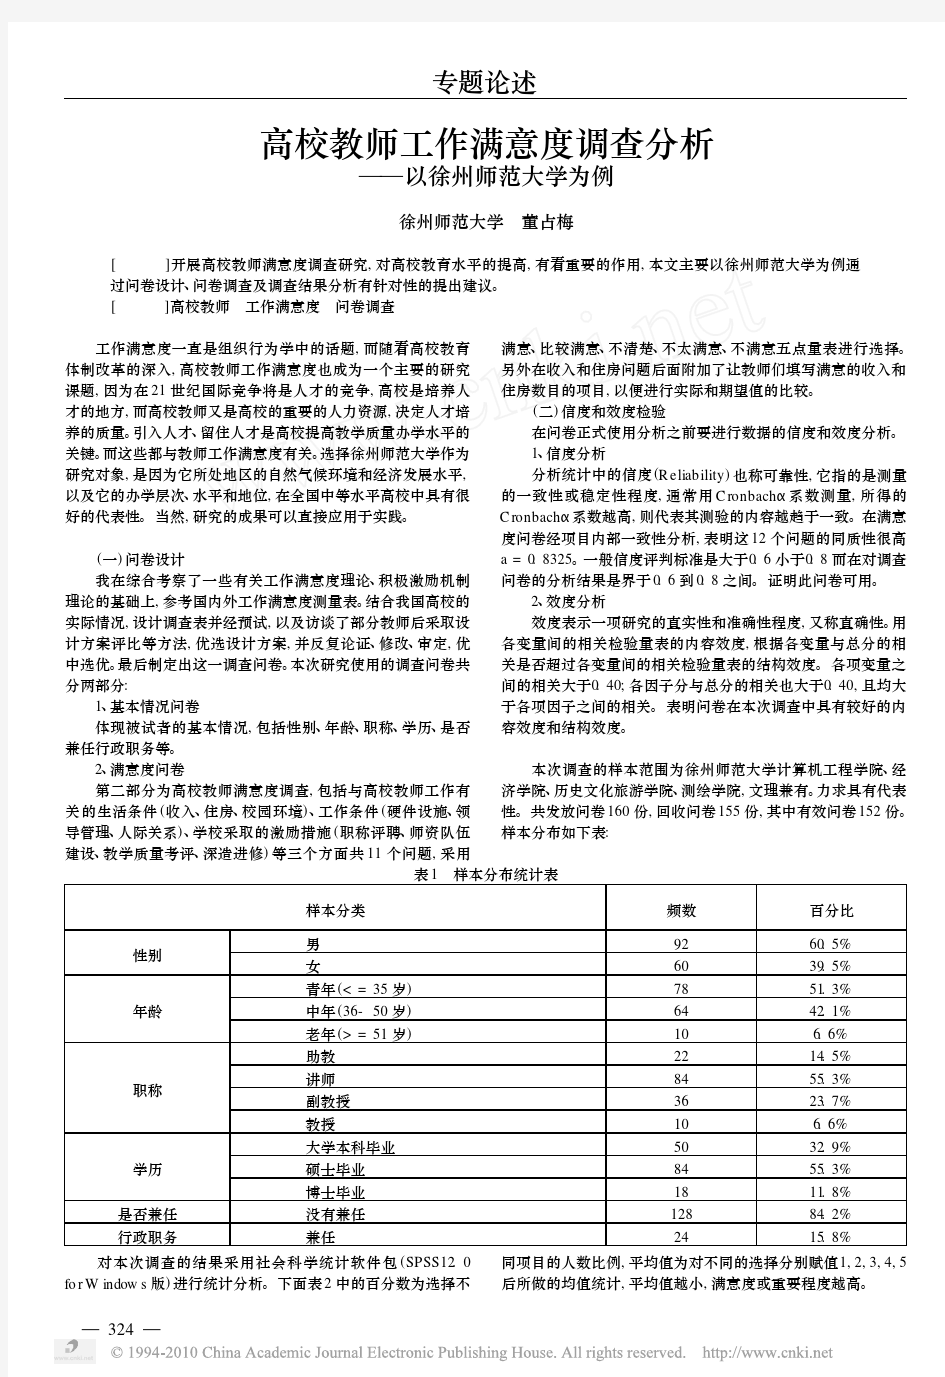 高校教师工作满意度调查分析_以徐州师范大学为例